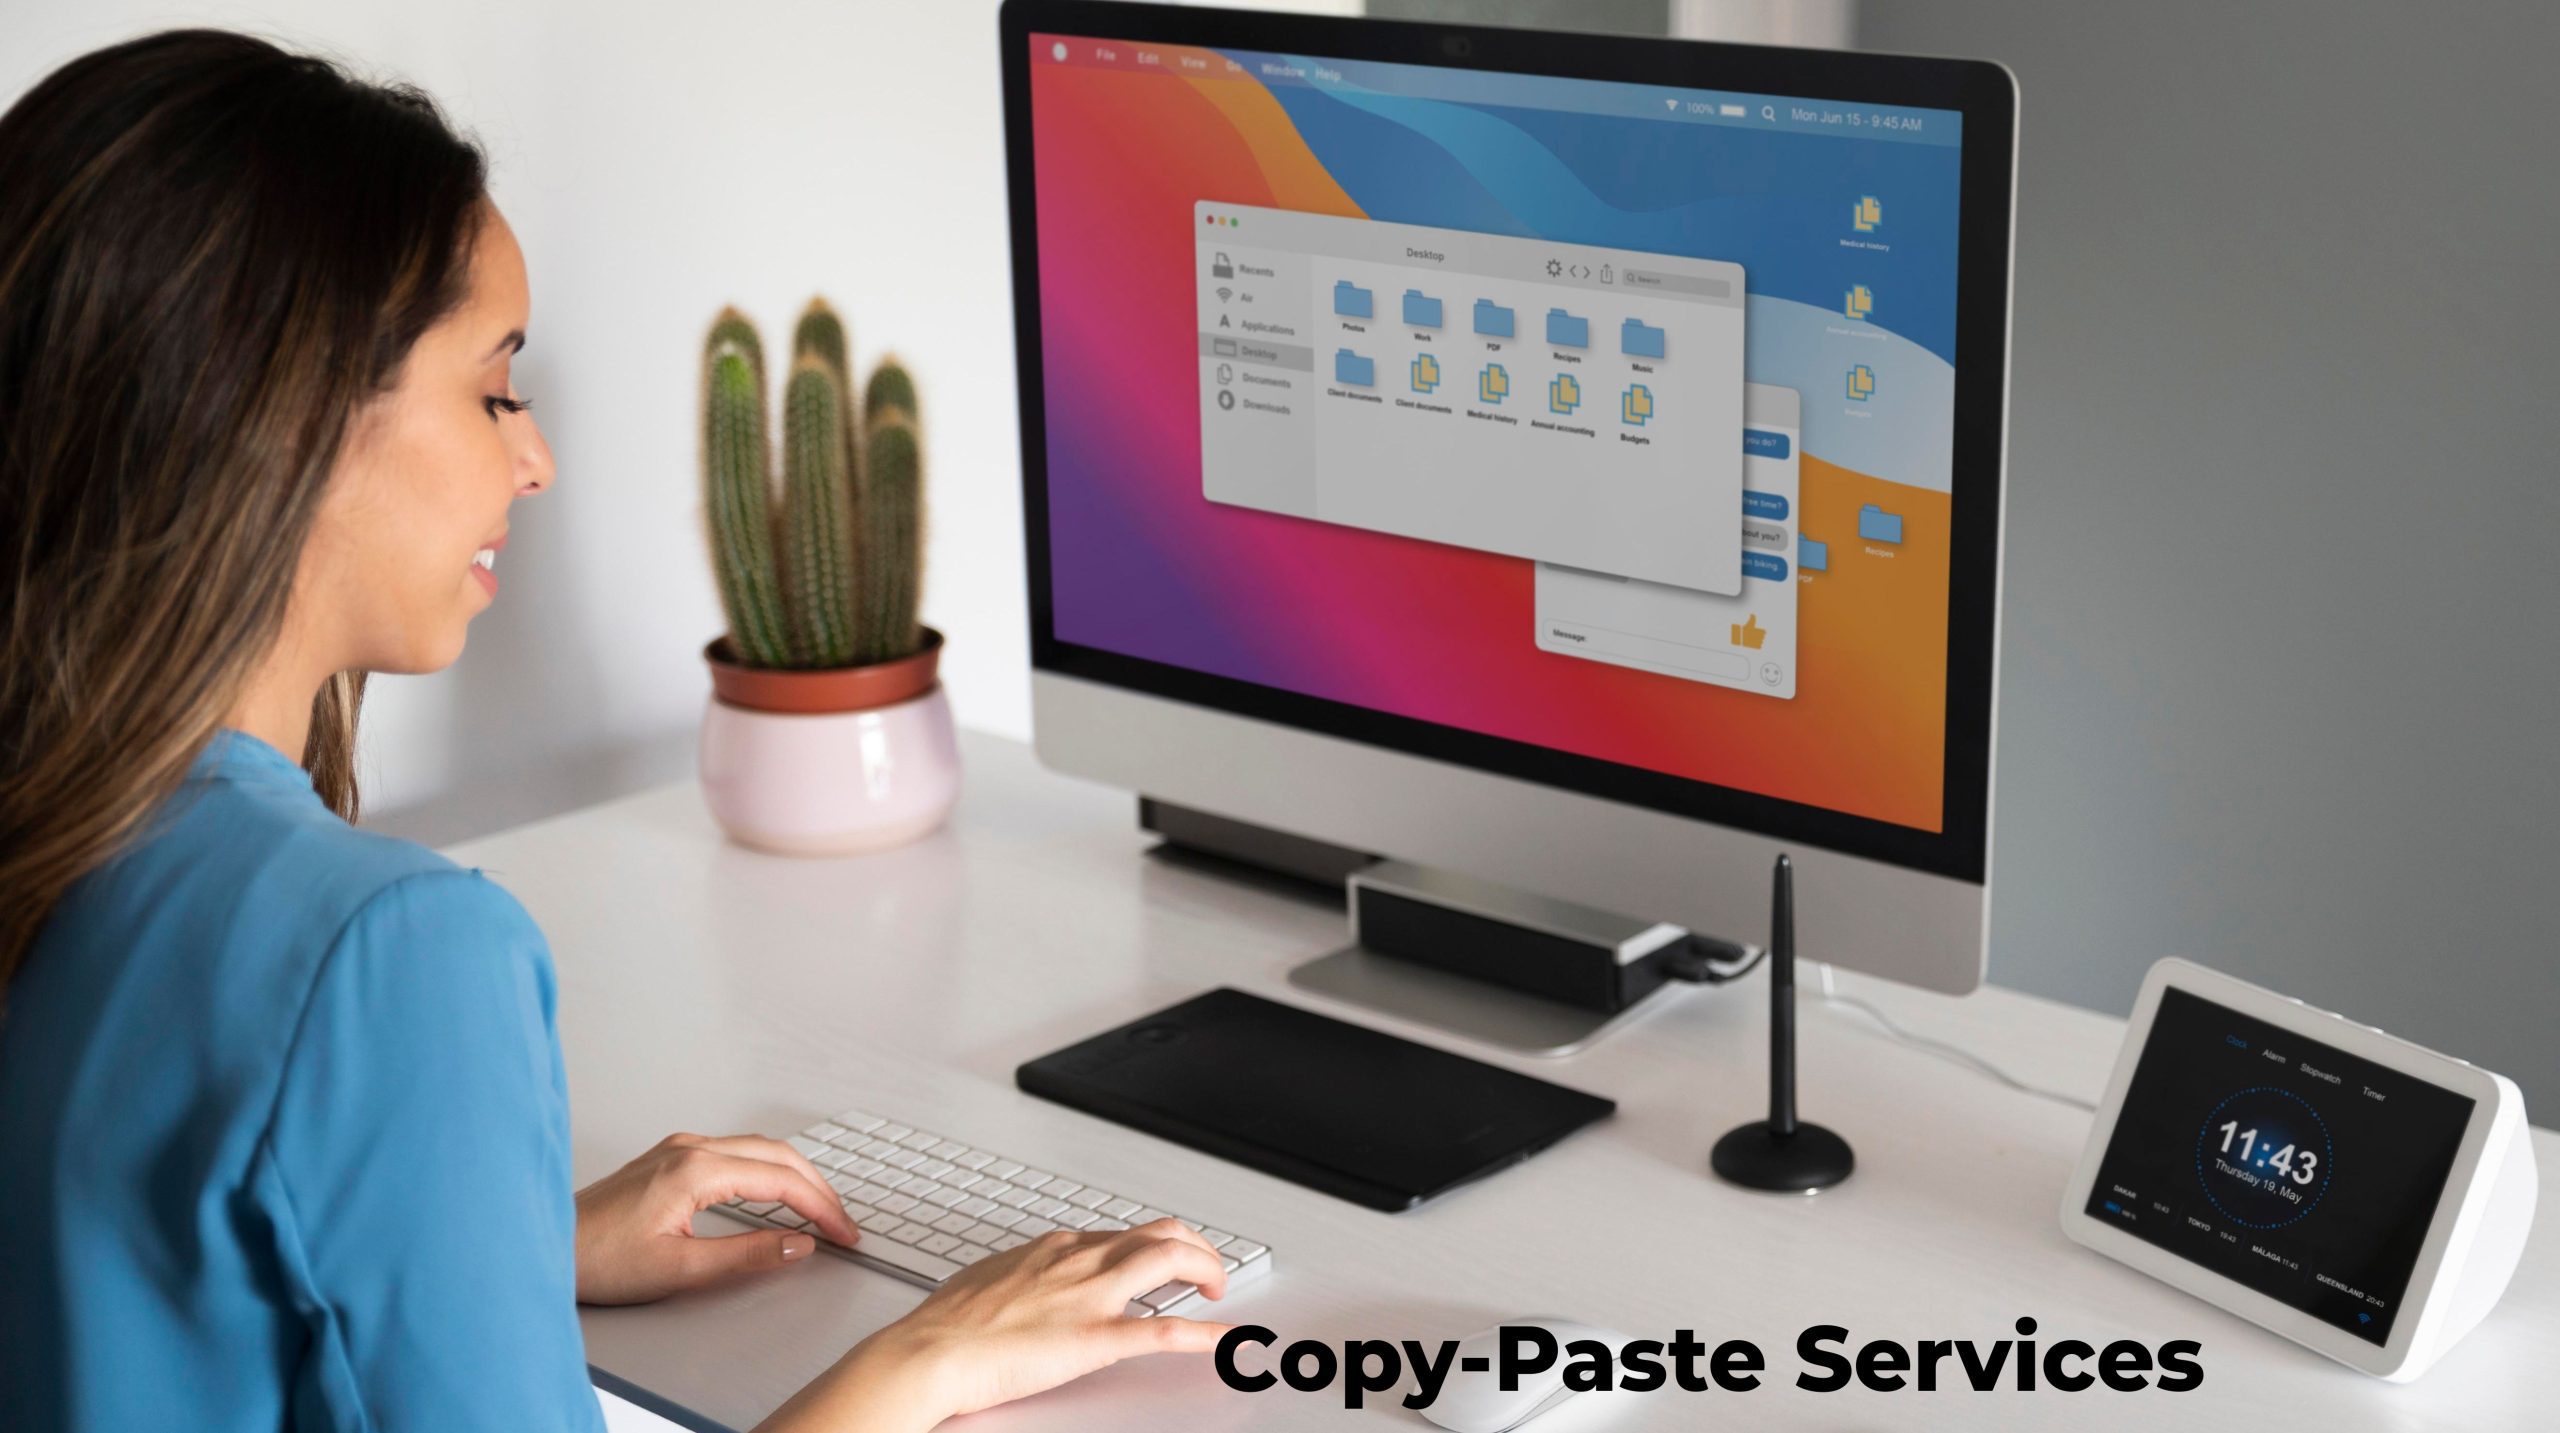 Copy-Paste Services